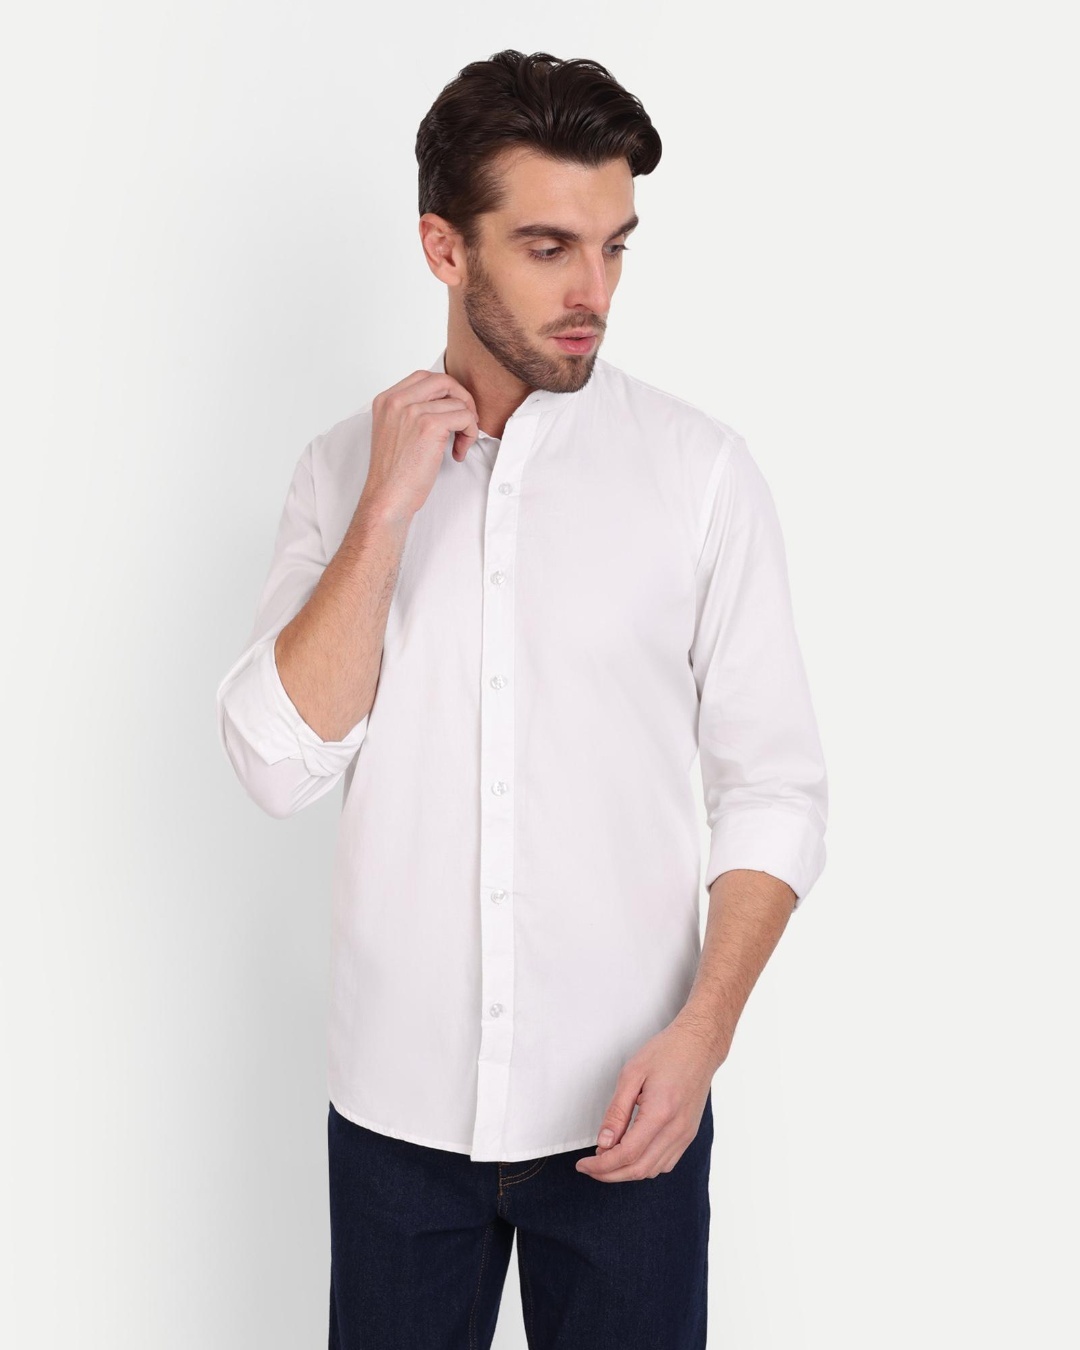 Buy Men's White Slim Fit Shirt Online at Bewakoof